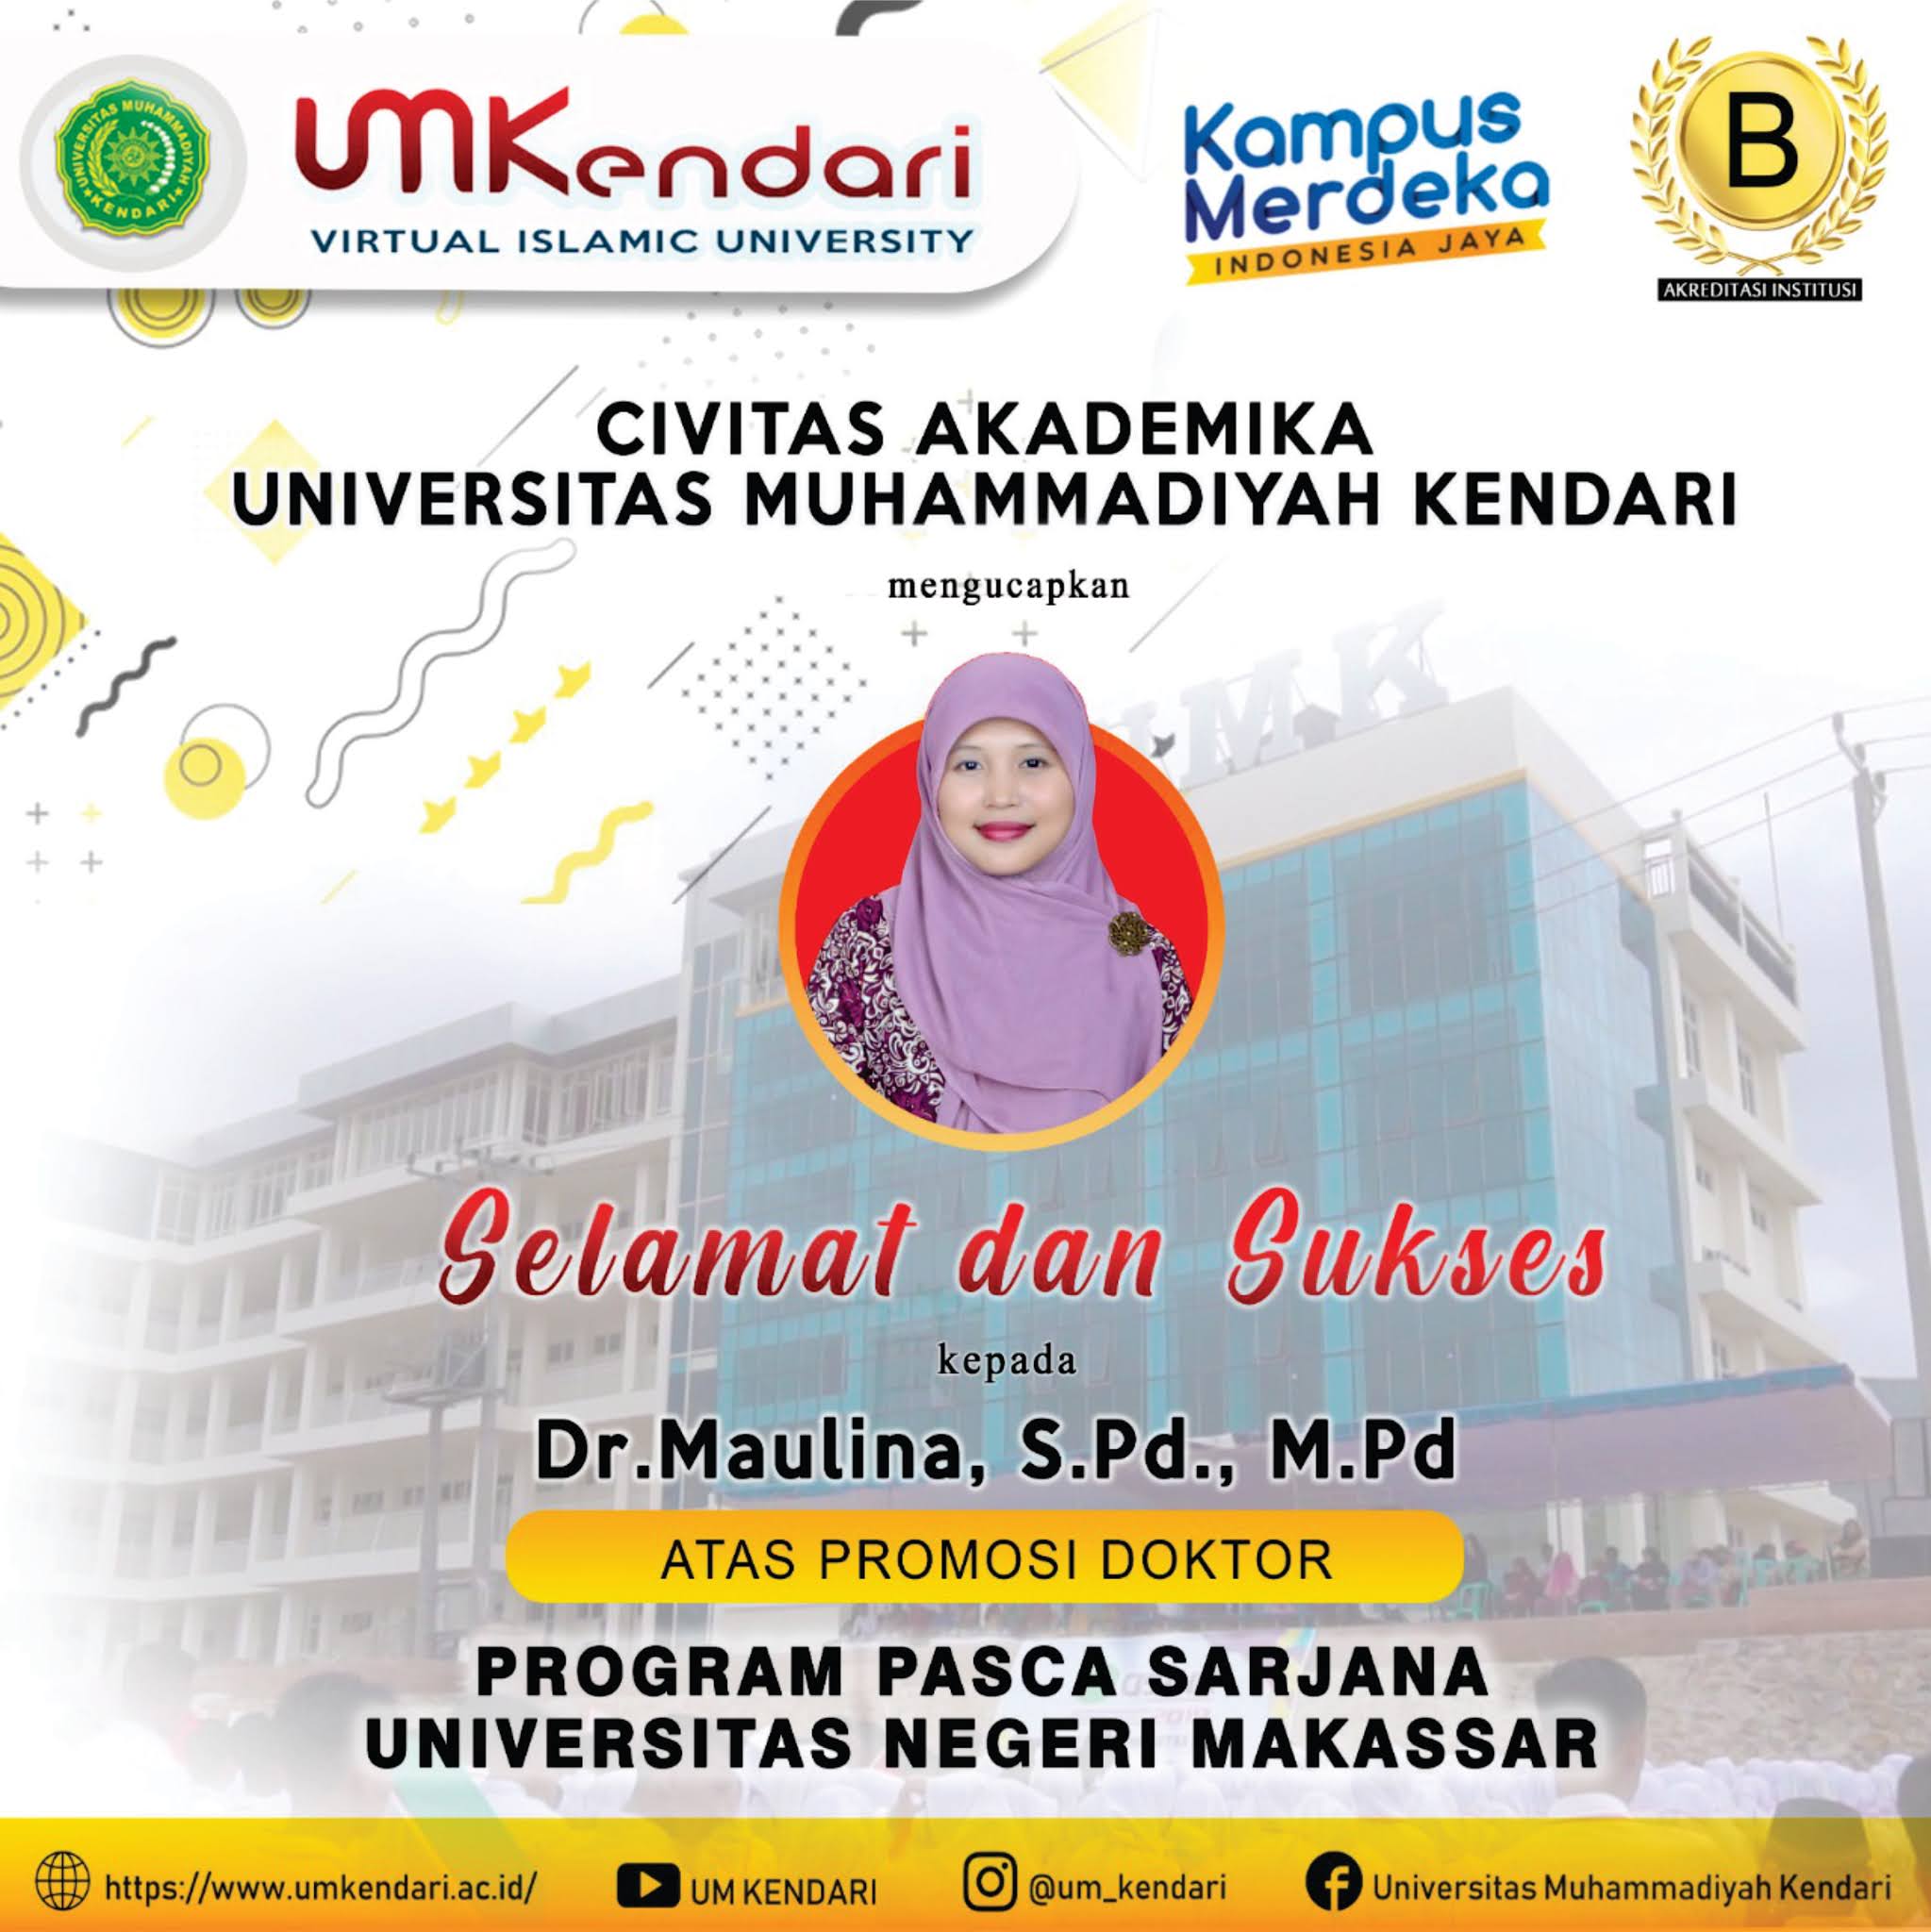 Gambar Logo Universitas Muhammadiyah Kendari - Nusagates